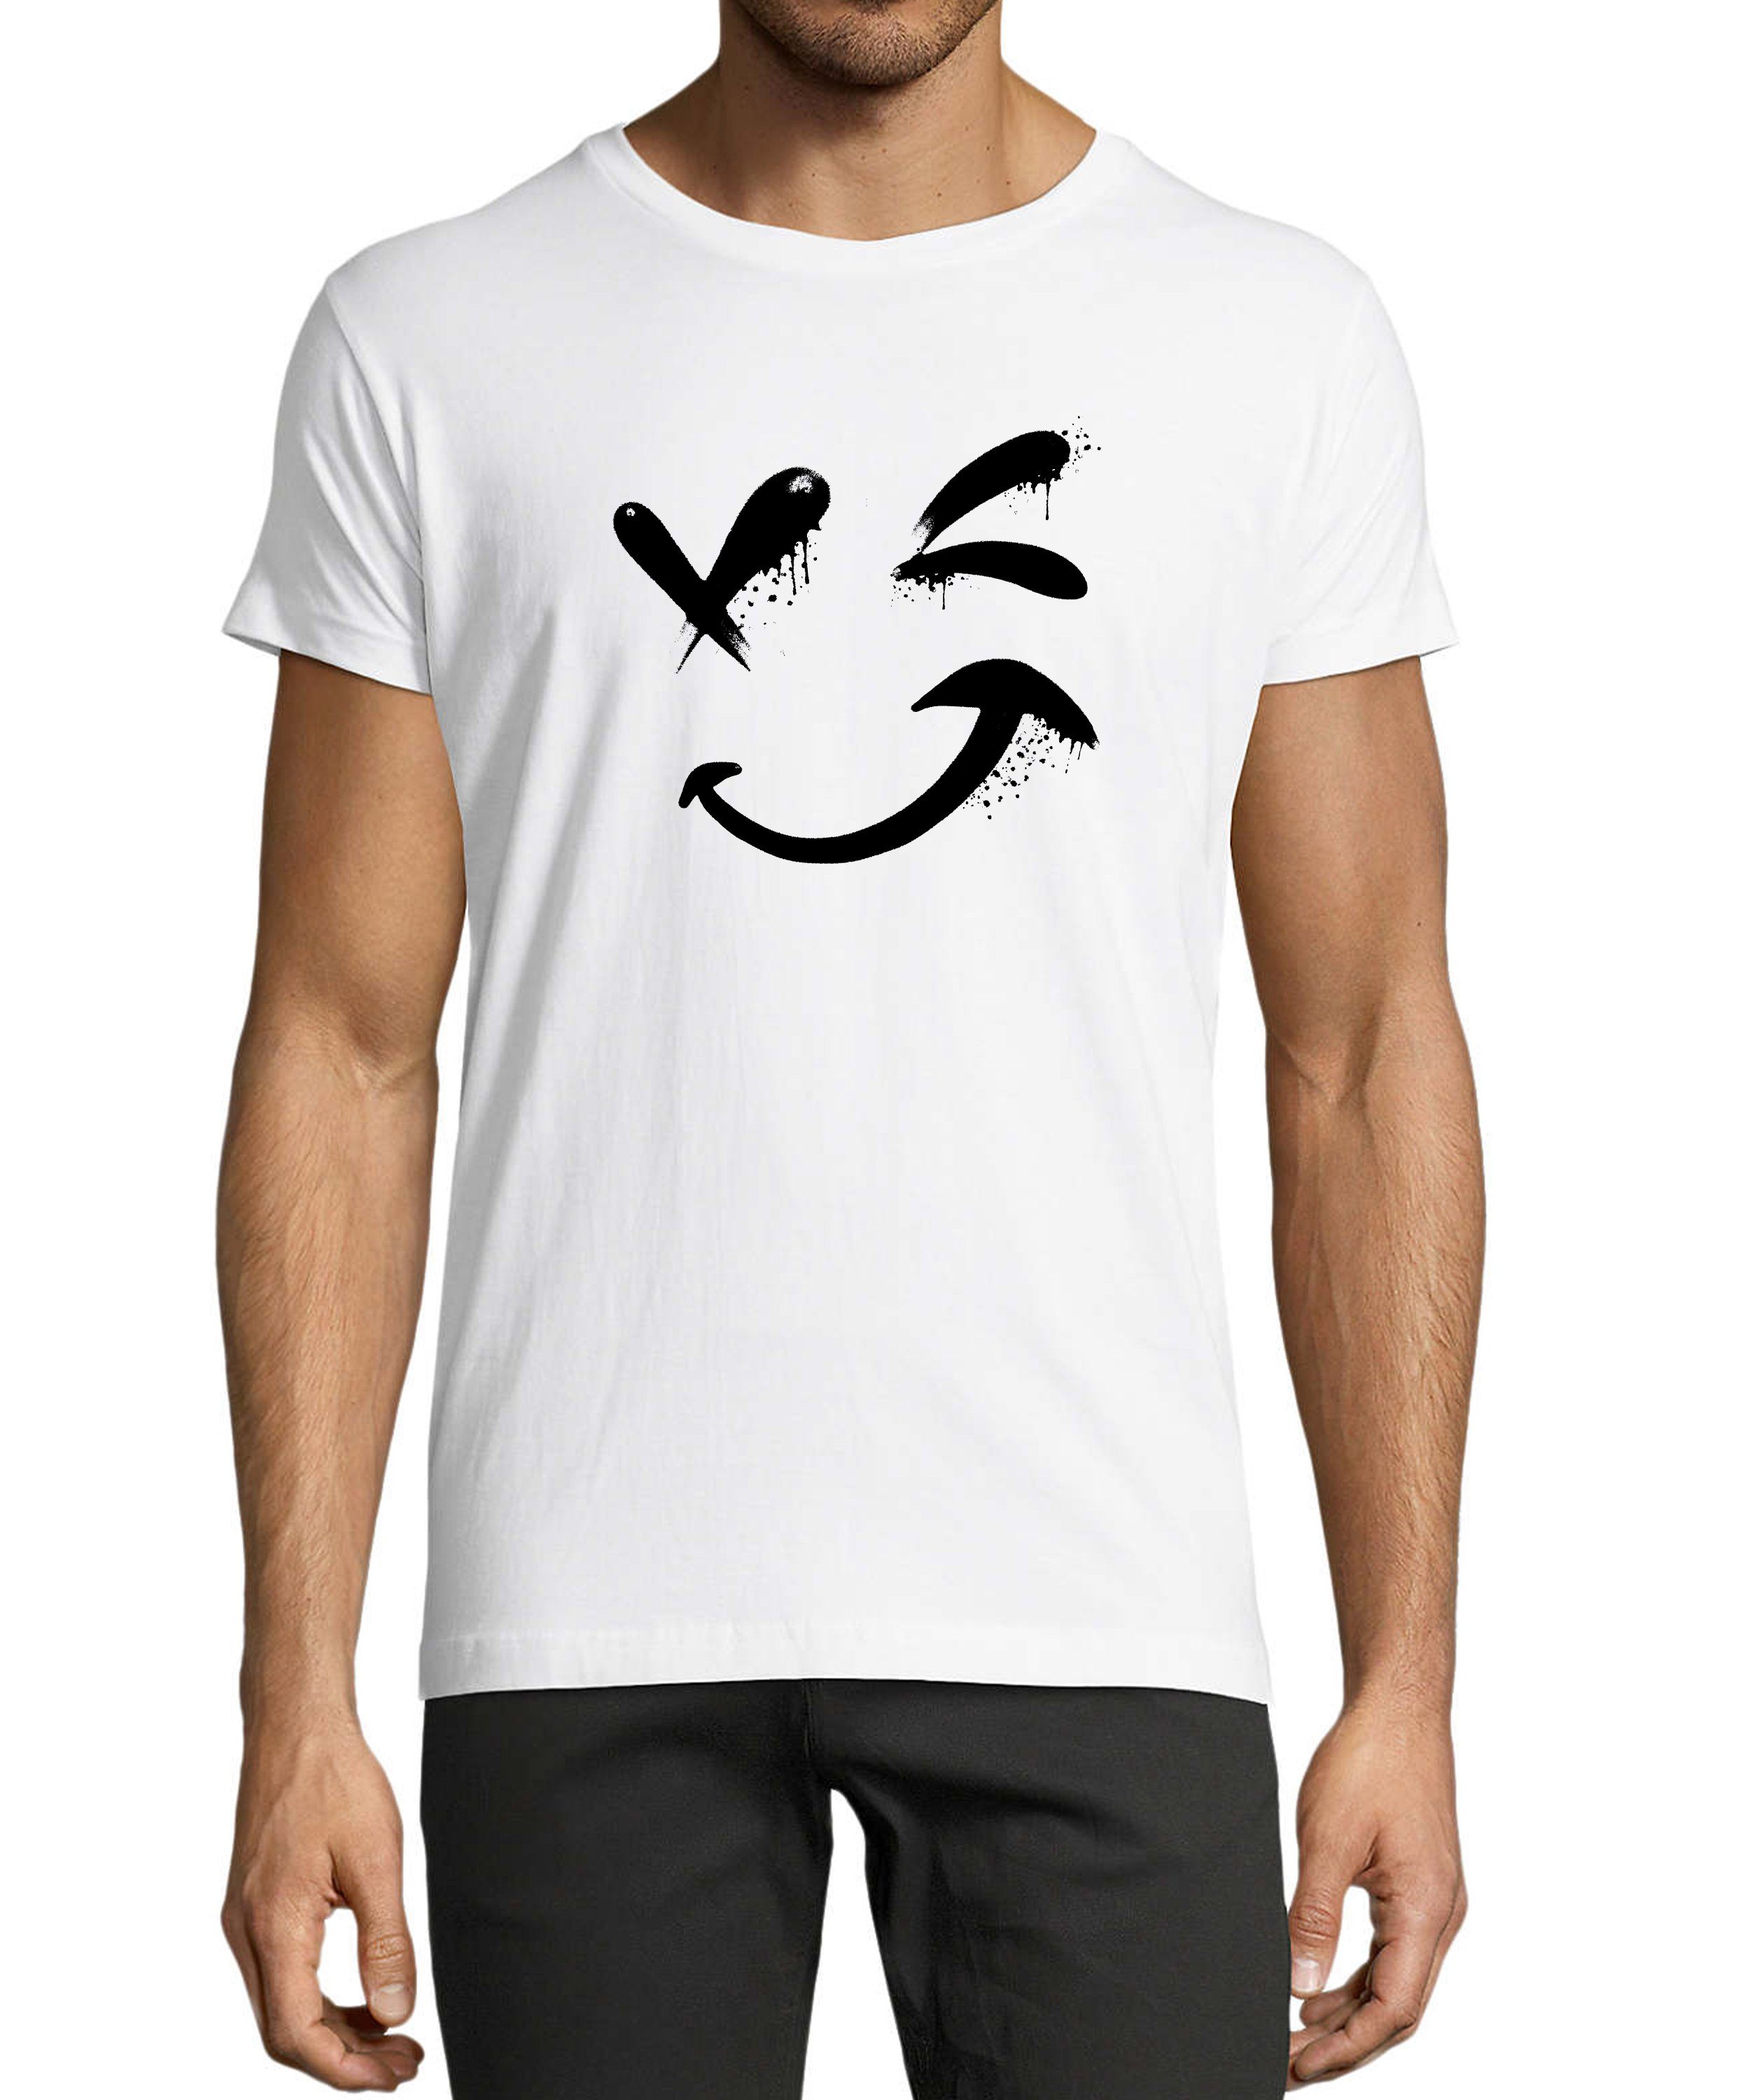 MyDesign24 T-Shirt Fit, - mit weiss Smiley Print i294 Aufdruck Regular Shirt Herren Smiley Baumwollshirt Zwinkernder